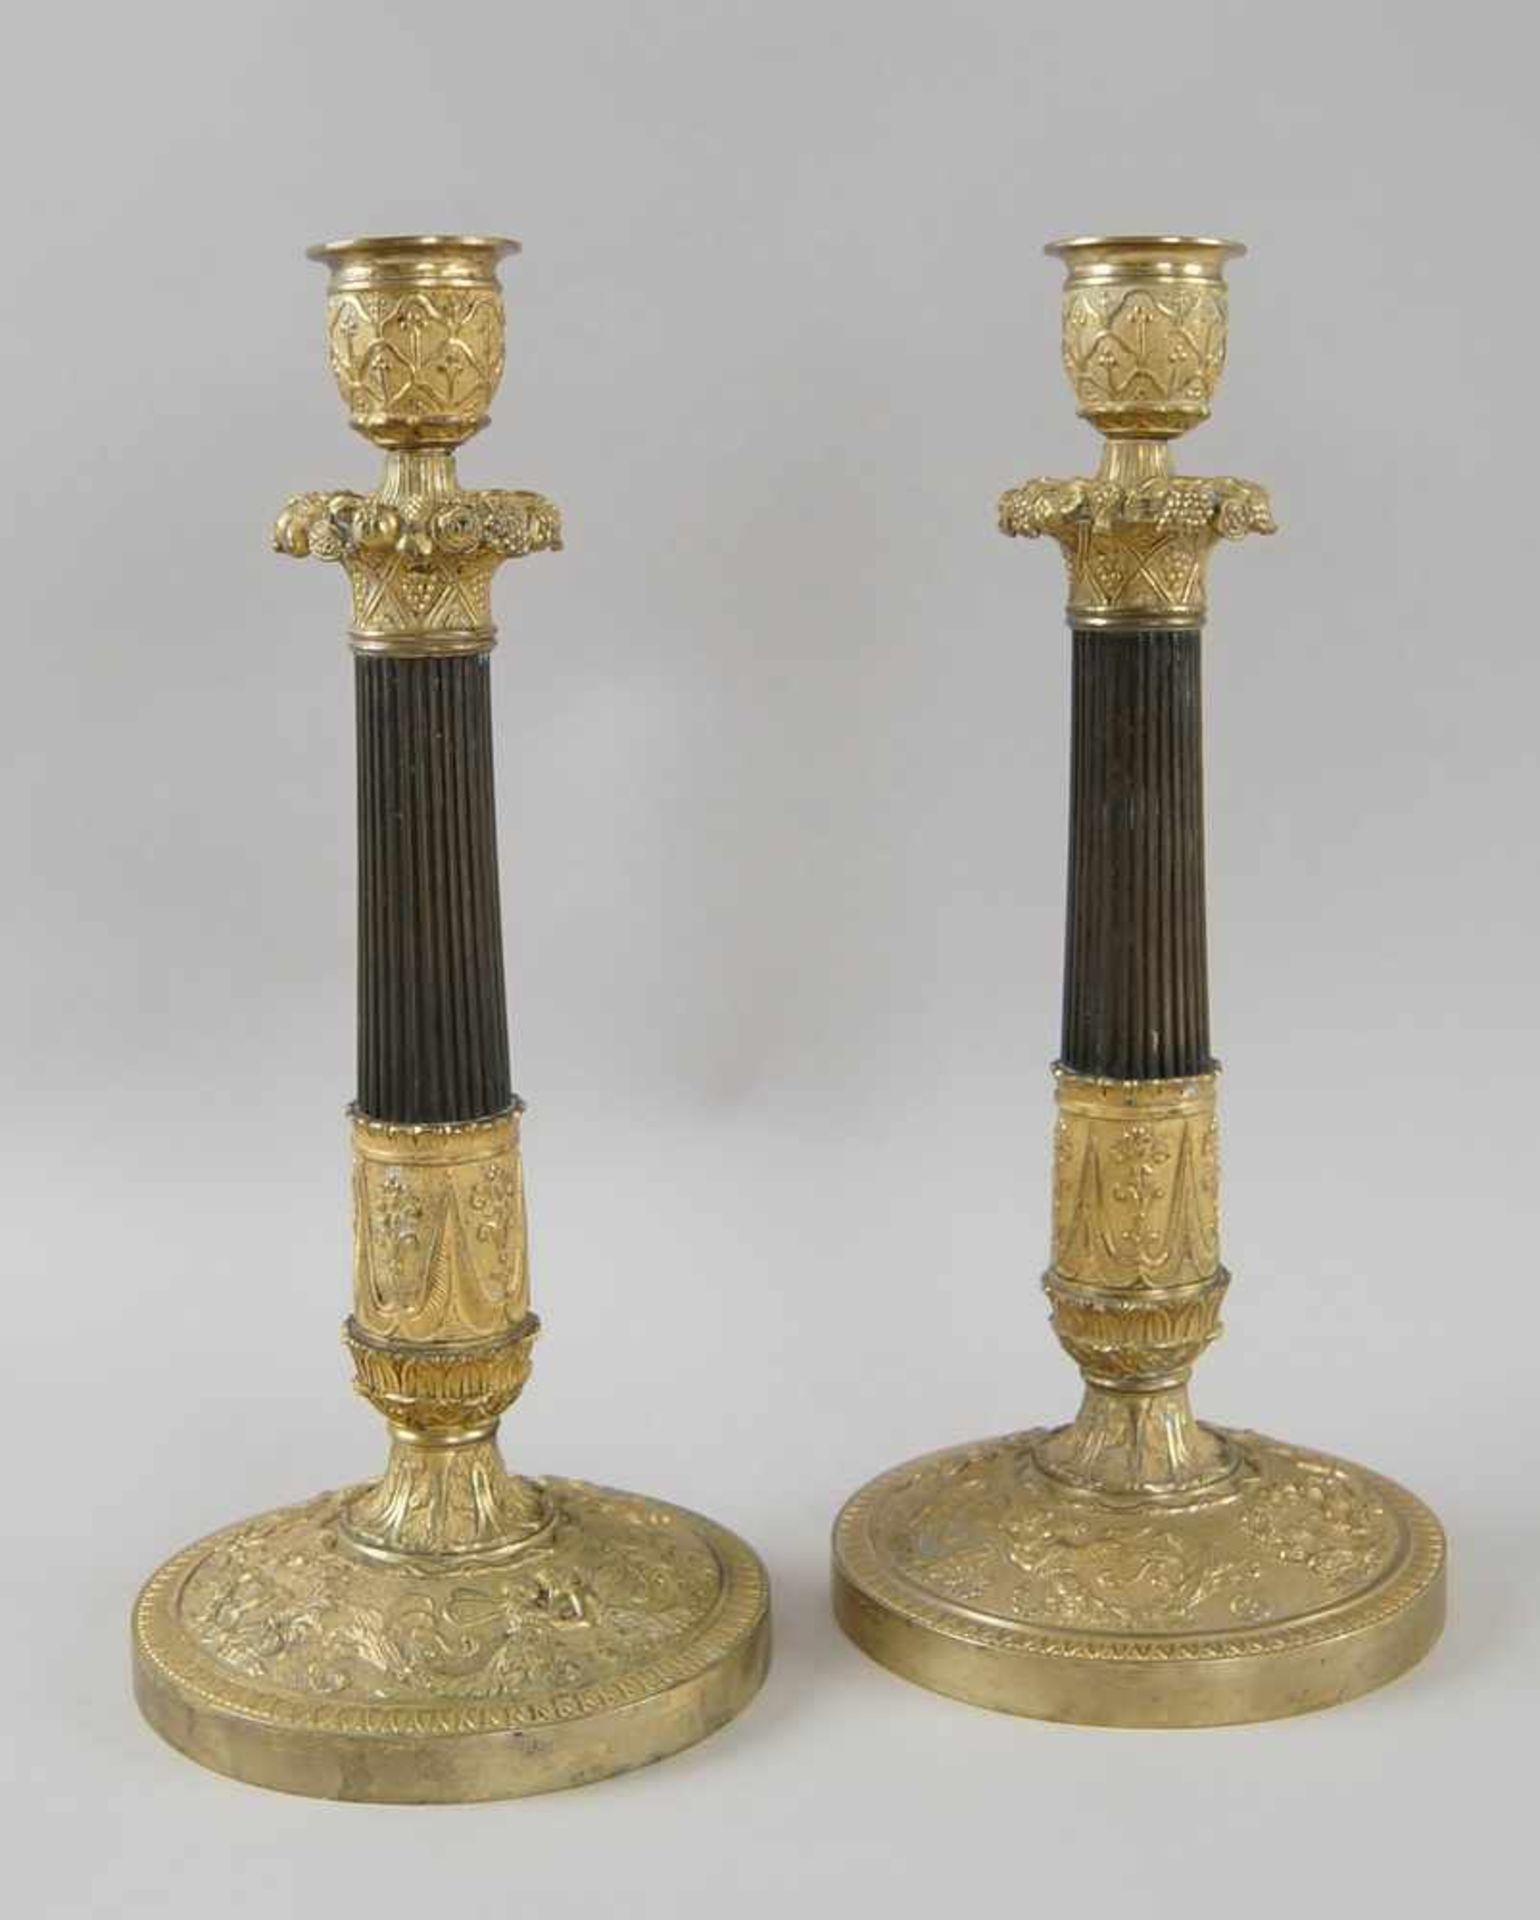 Paar prunkvolle Tafelleuchter / Kerzenleuchter, Bronze/Messing, fein gearbeitet, 18. JH, H